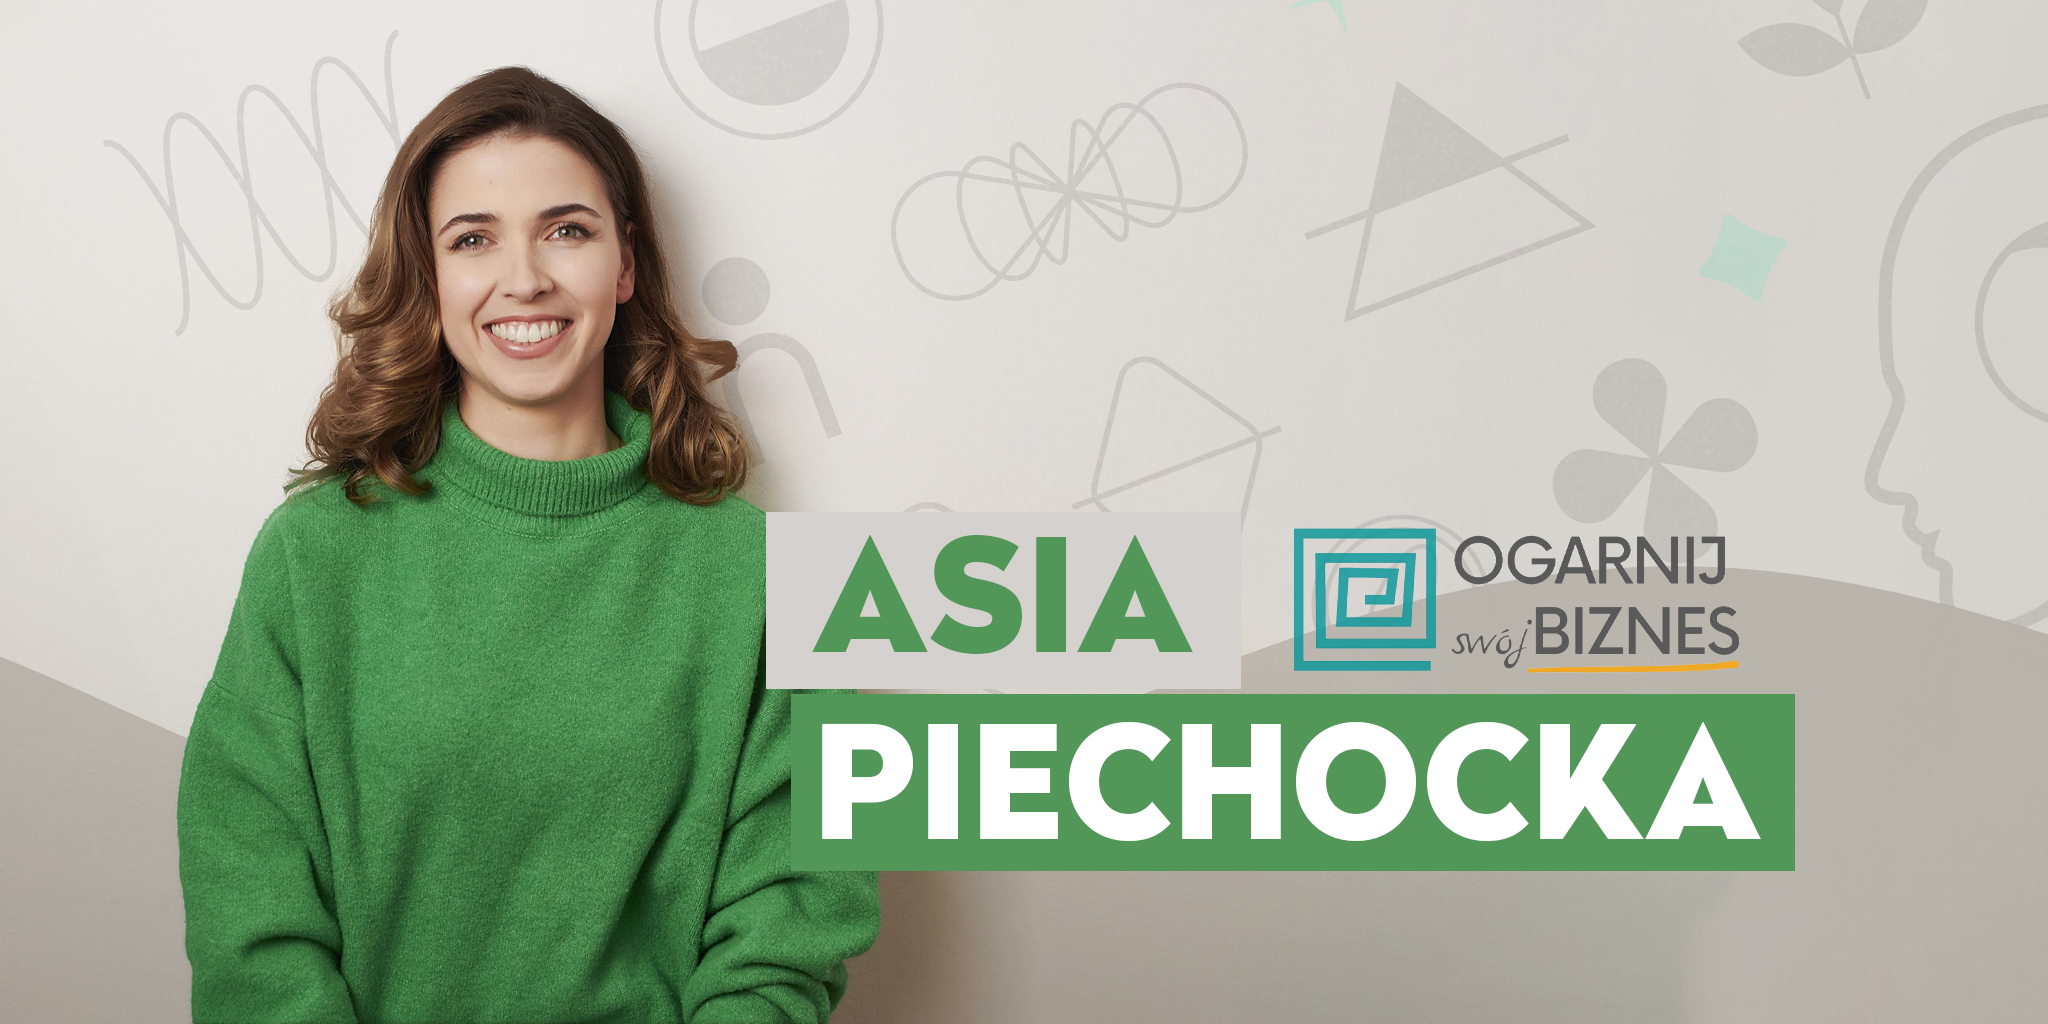 Jak usprawnić i uspokoić swój biznes - wywiad z Asią Piechocką - ekspertką produktywności